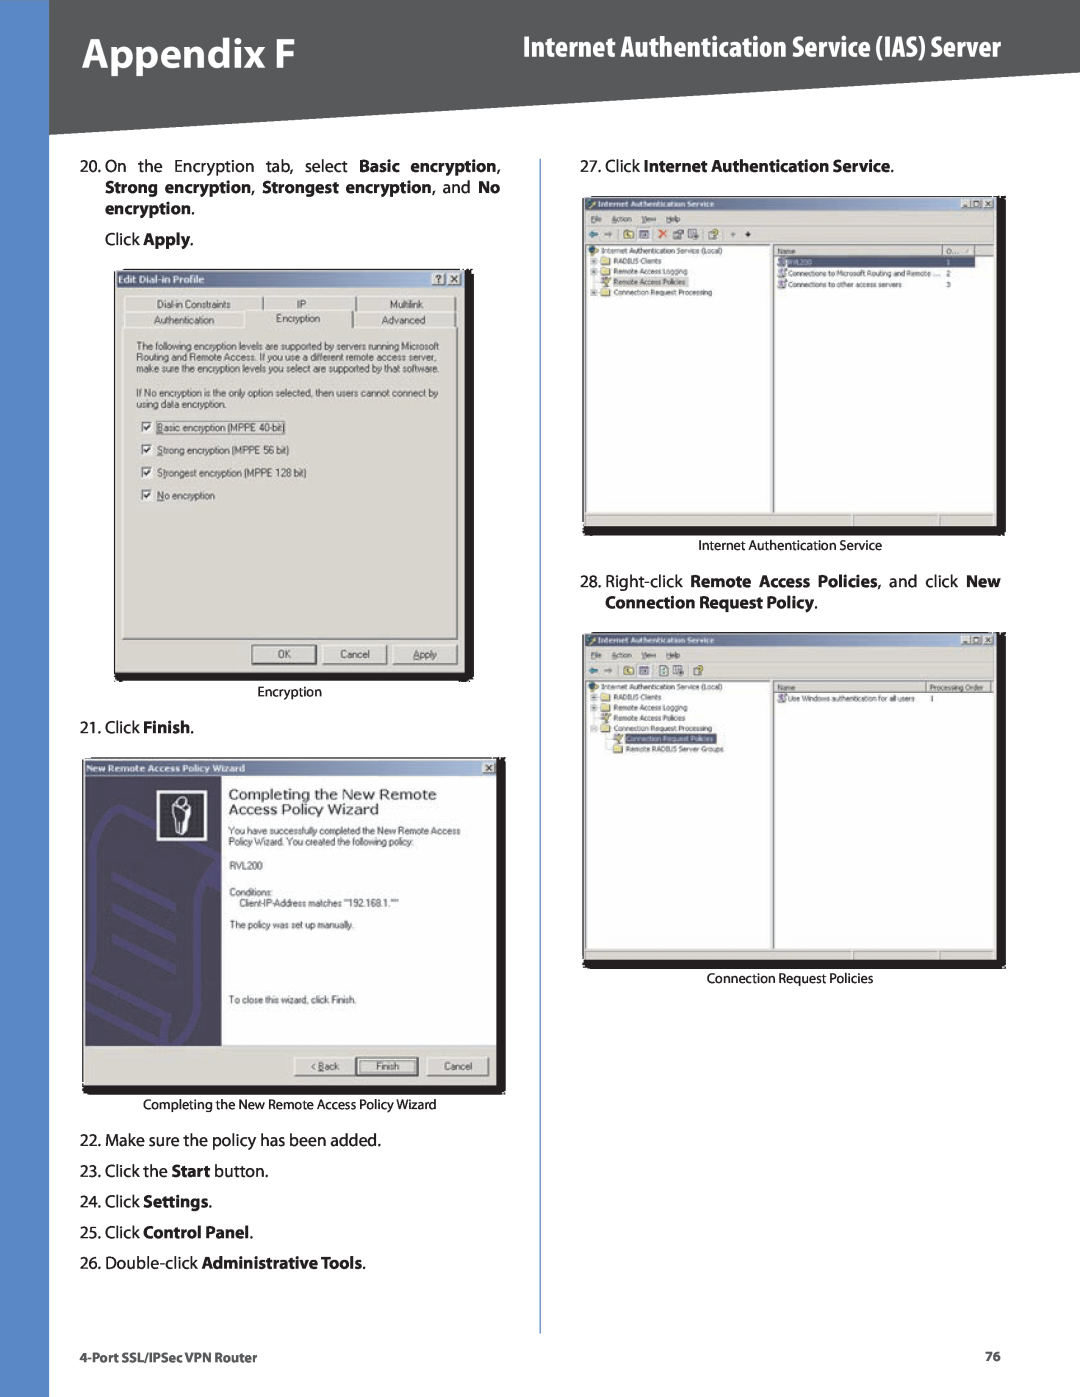 Cisco Systems RVL200 manual Click Settings 25. Click Control Panel, Double-click Administrative Tools, Appendix F 